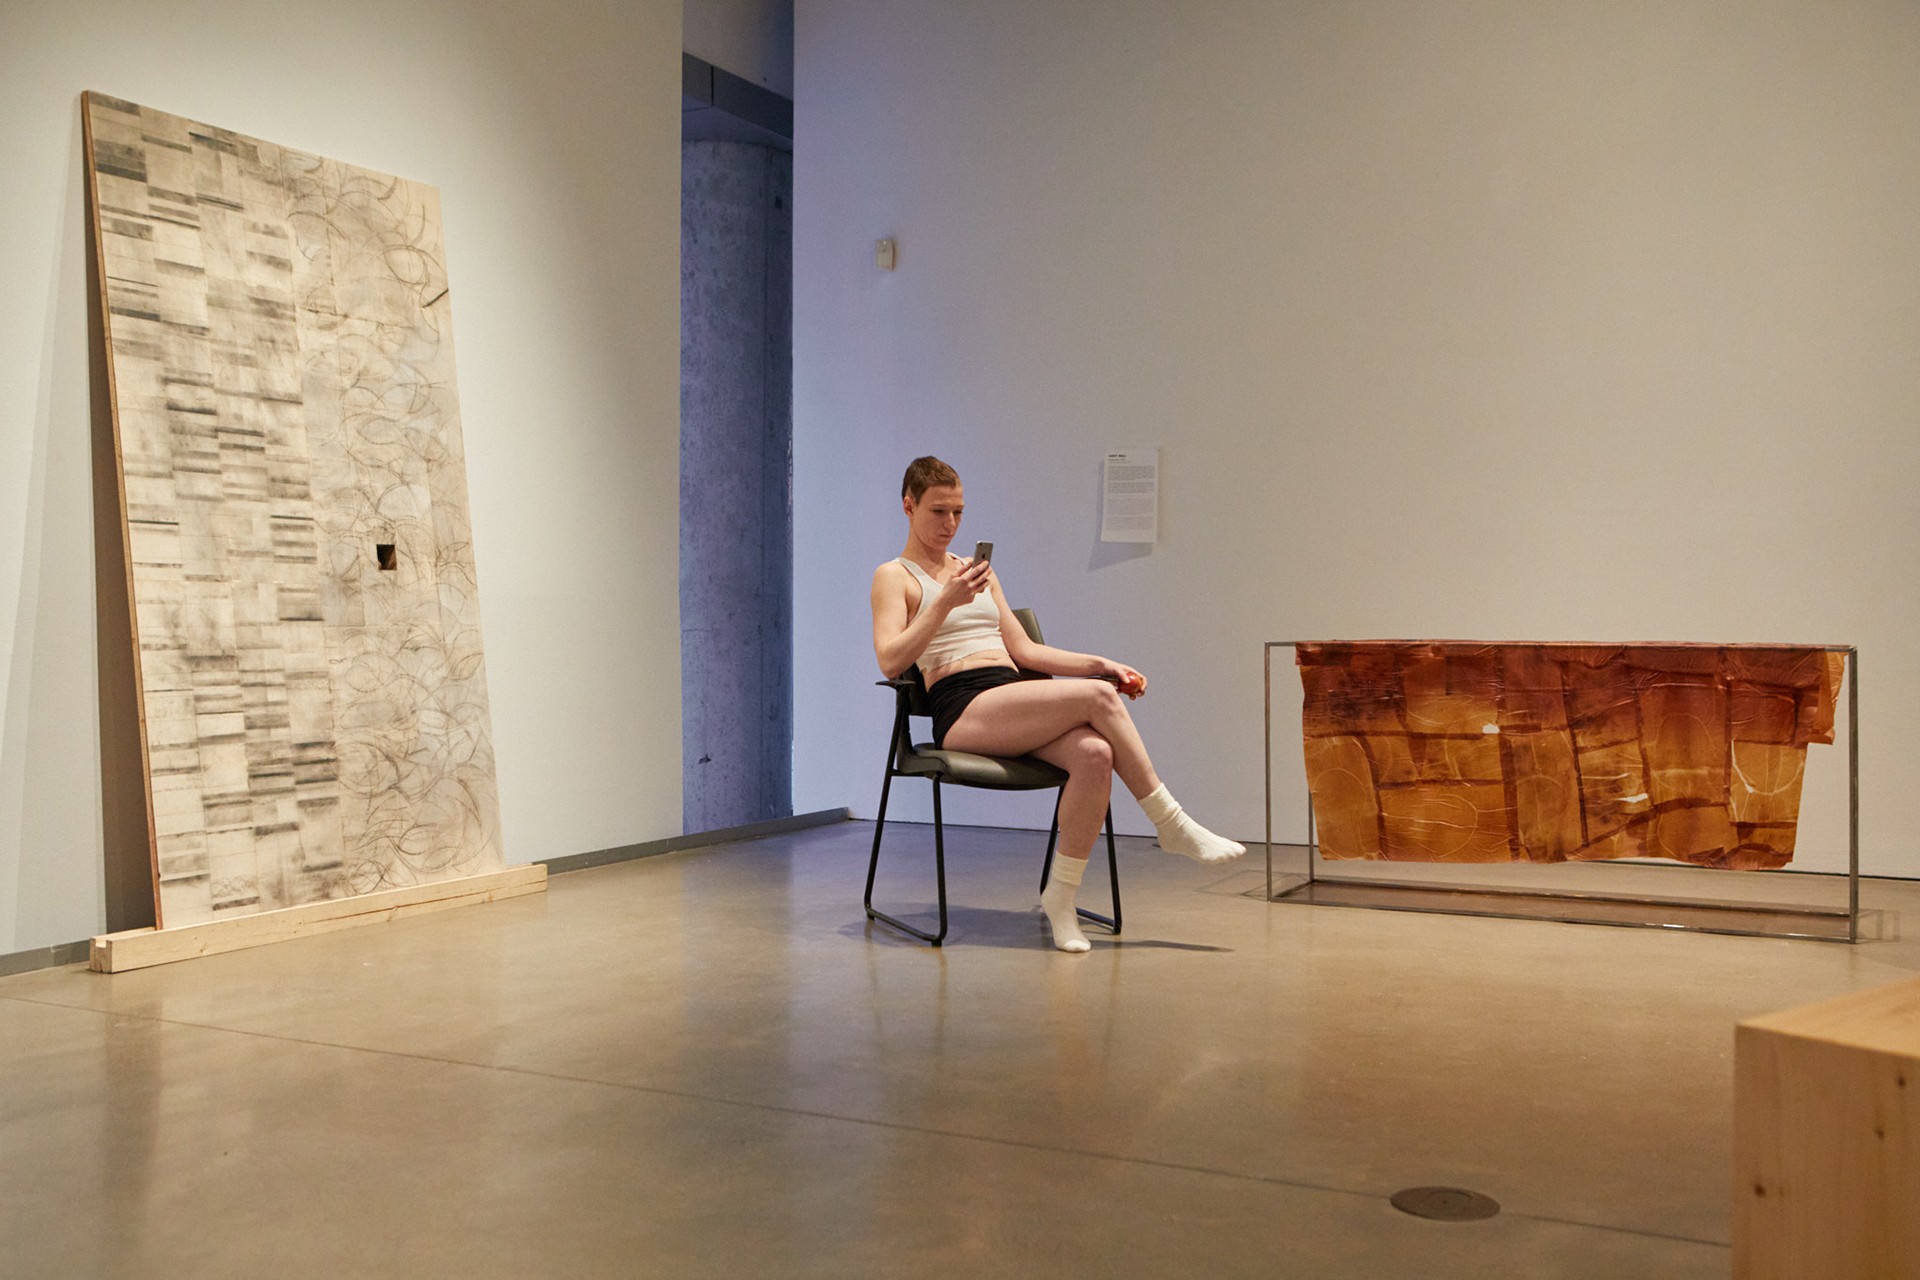 Anne-Marie Latulippe (alias "Steel Toes") est photographiée assise sur une chaise à côté de l'œuvre d'art Mastication de Lucy Gill. Elle tient un téléphone dans sa main gauche et une pomme dans sa main droite. Elle filme le public qui circule dans l'espace de la galerie.